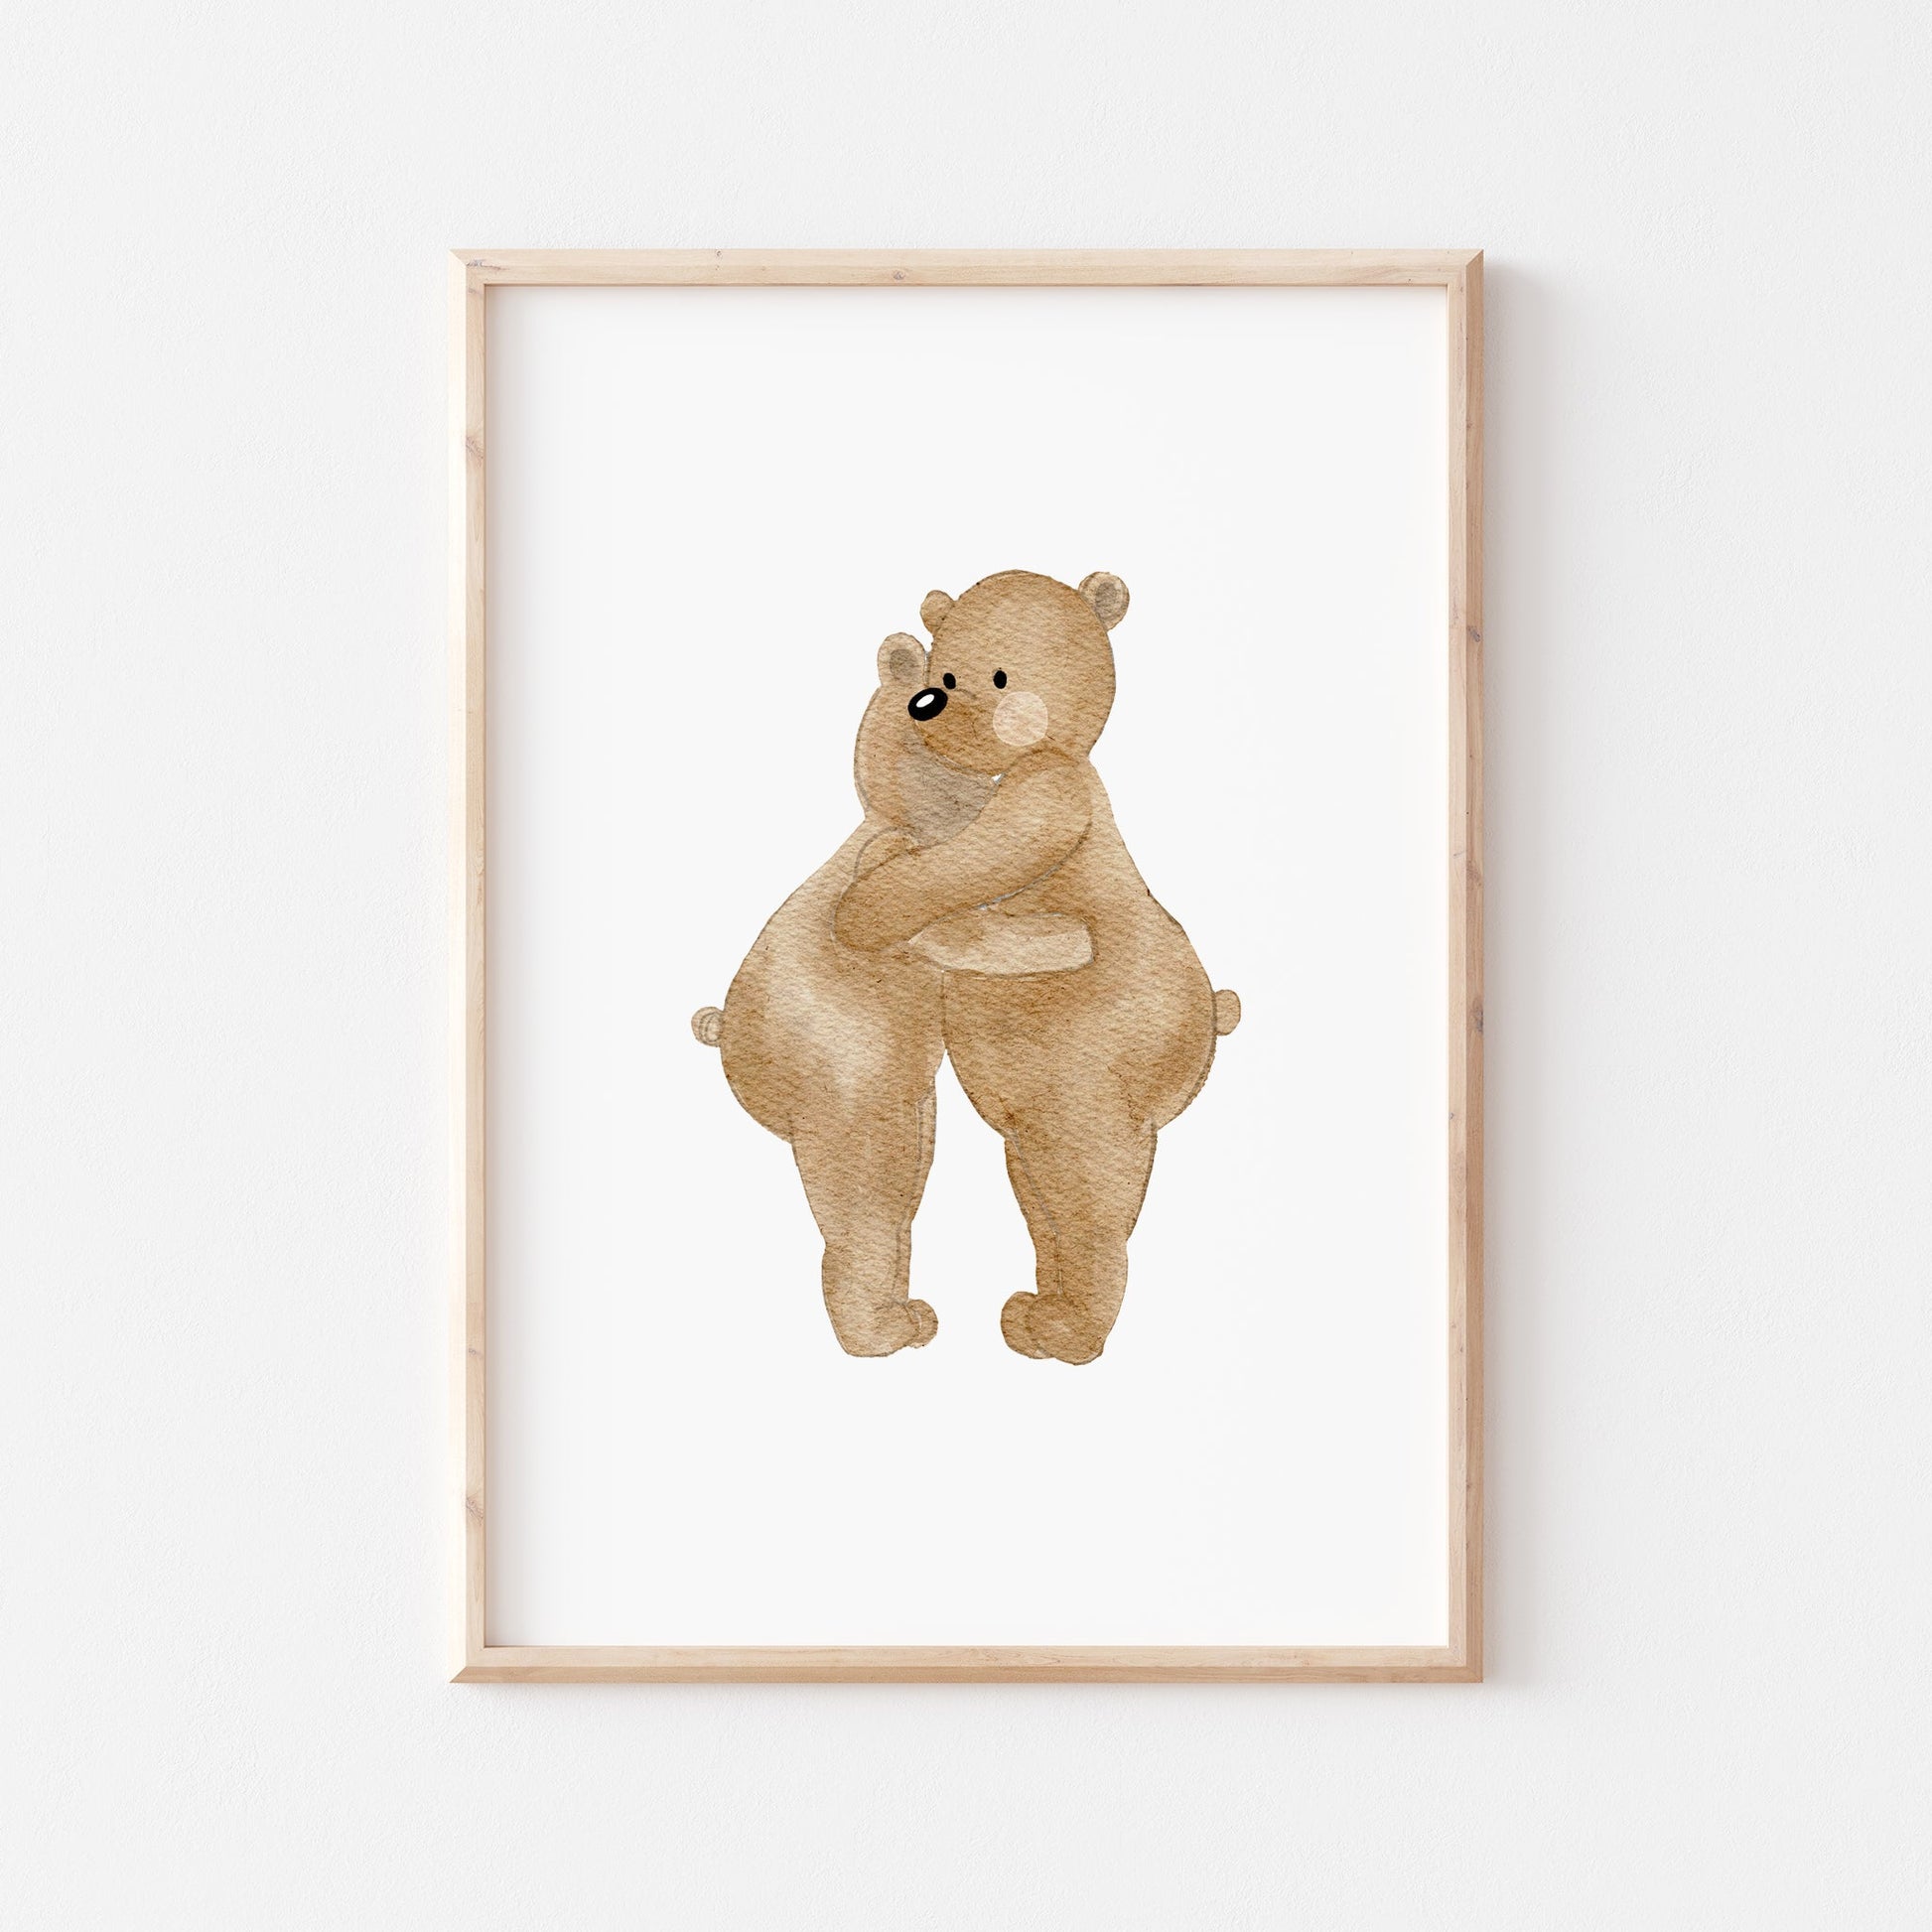 Poster 'Bären-Umarmung' | Kinderzimmer Deko | DIN A4 oder A5 Poster Kotenkram DIN A4 (210 x 297 mm)